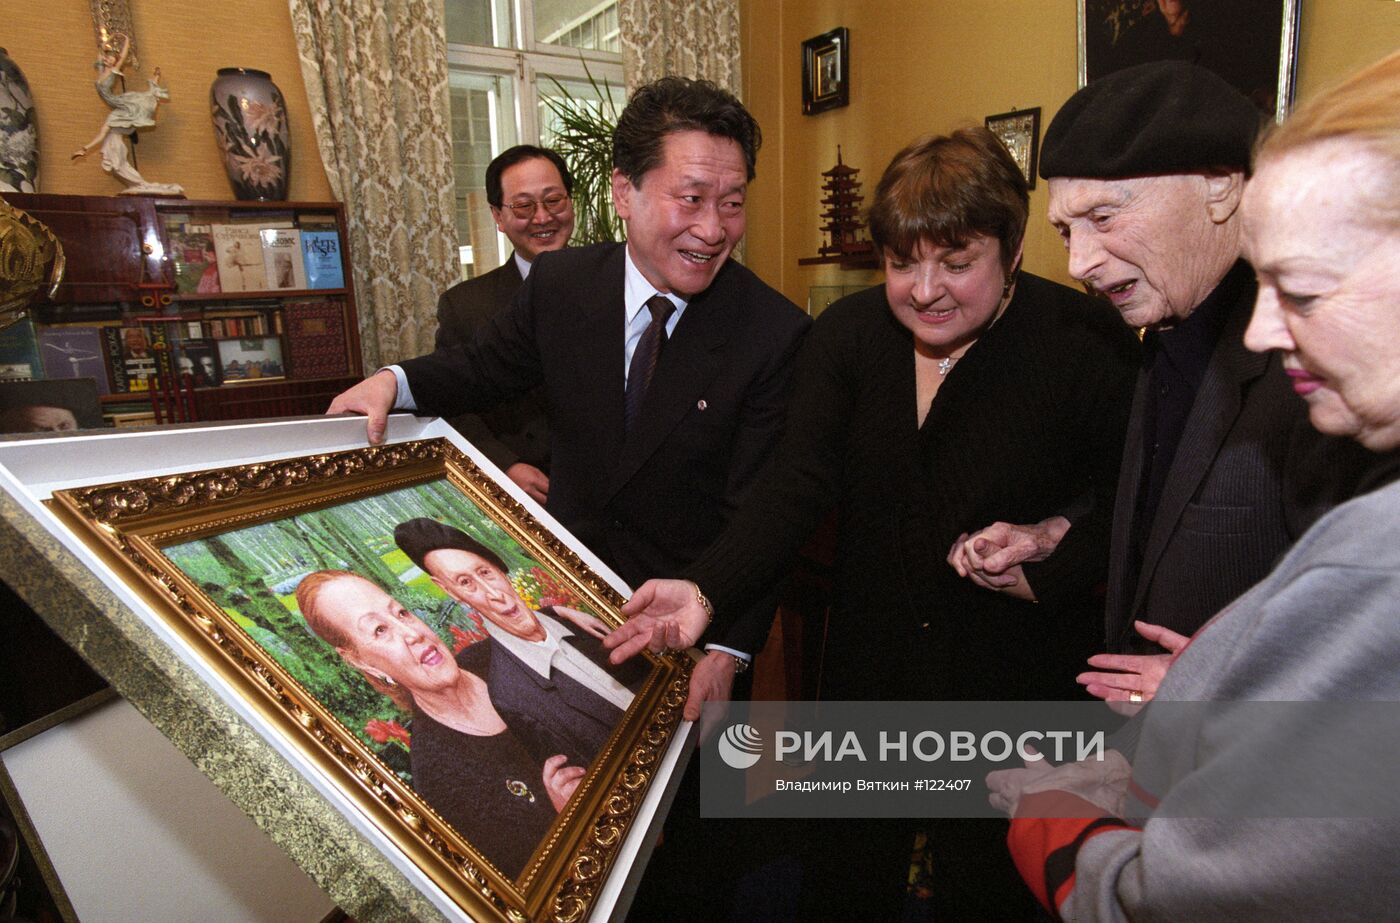 И. Моисеев принимает личный подарок от Ким Чен Ира